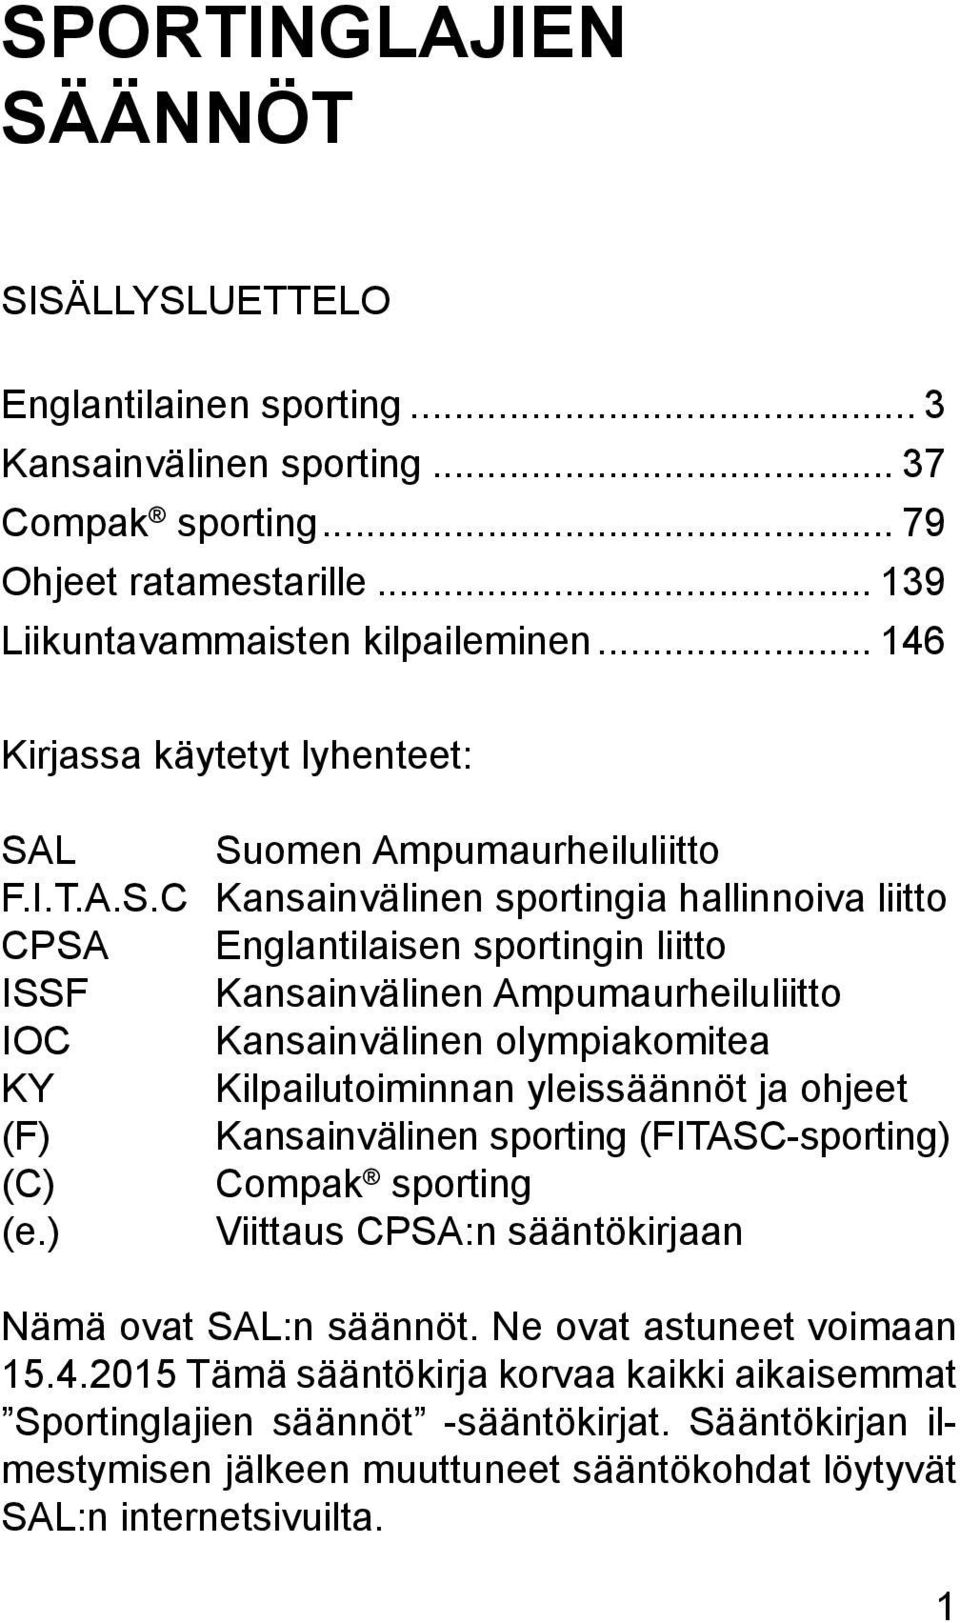 L Suomen Ampumaurheiluliitto F.I.T.A.S.C Kansainvälinen sportingia hallinnoiva liitto CPSA Englantilaisen sportingin liitto ISSF Kansainvälinen Ampumaurheiluliitto IOC Kansainvälinen olympiakomitea